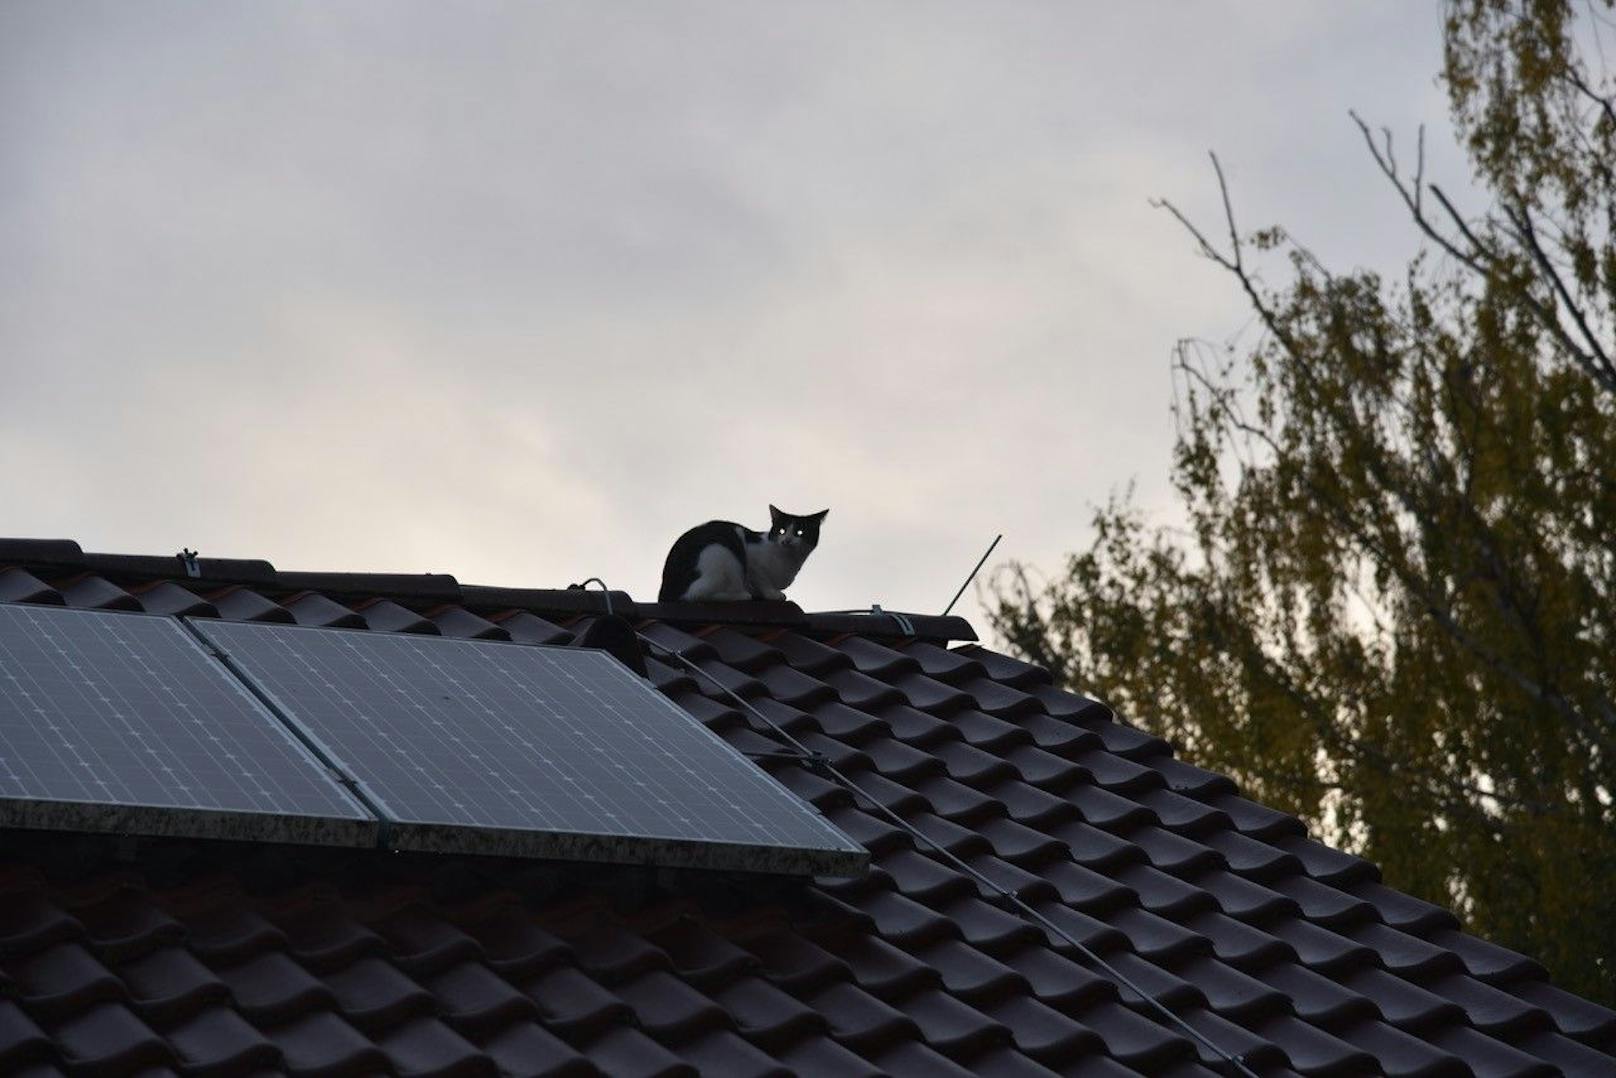 Katze "Funny" von Dach gerettet